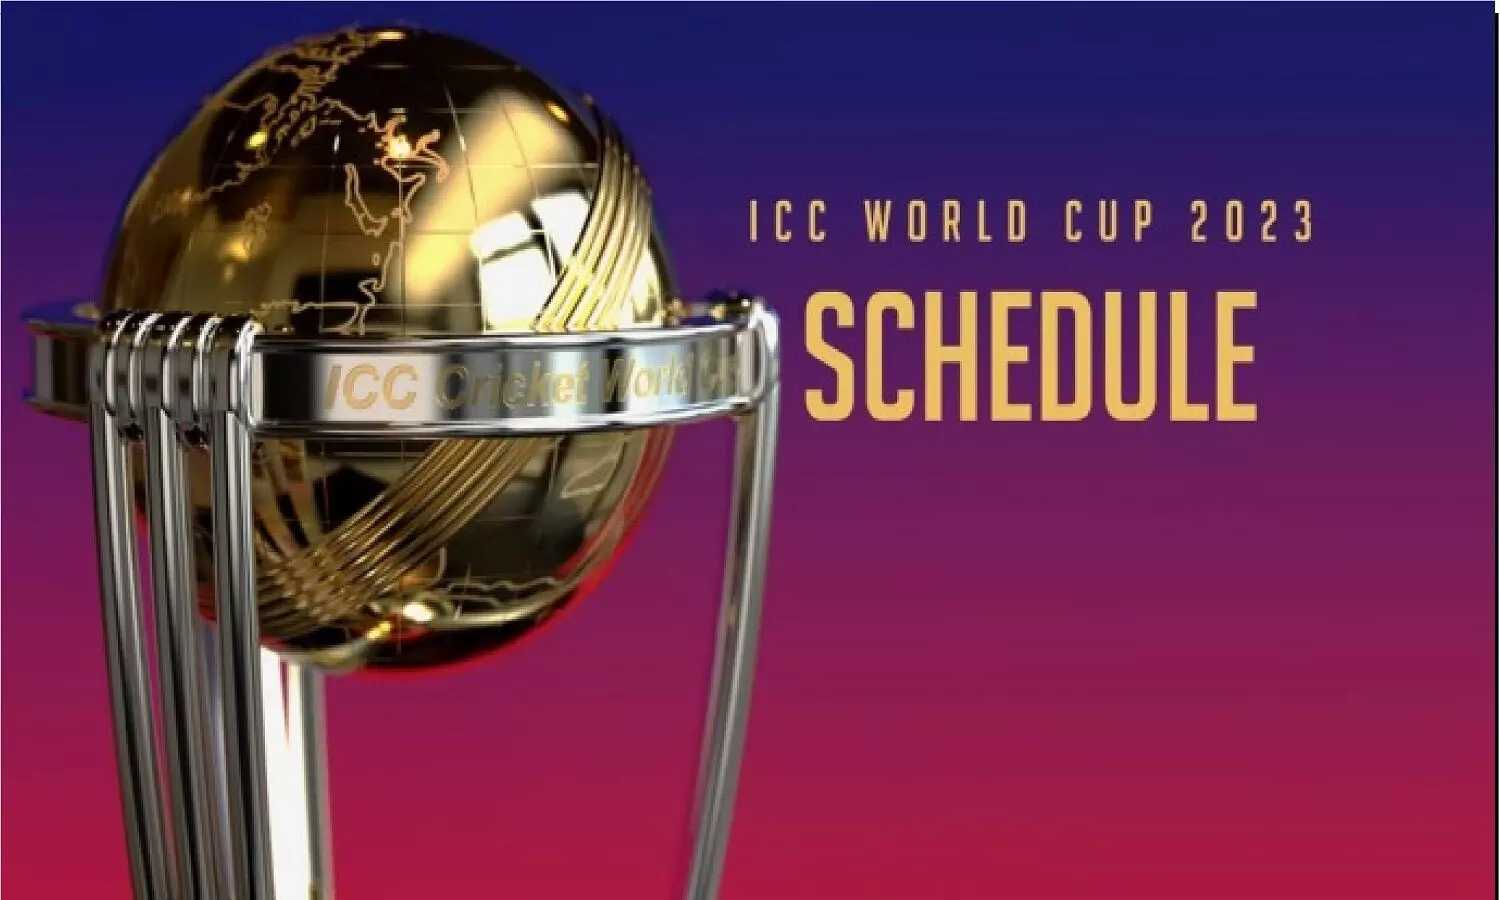 ICC World Cup 2023 Schedule: क्रिकेट वर्ल्ड कप 2023 का टाइमटेबल, IND Vs PAK कब होगा?